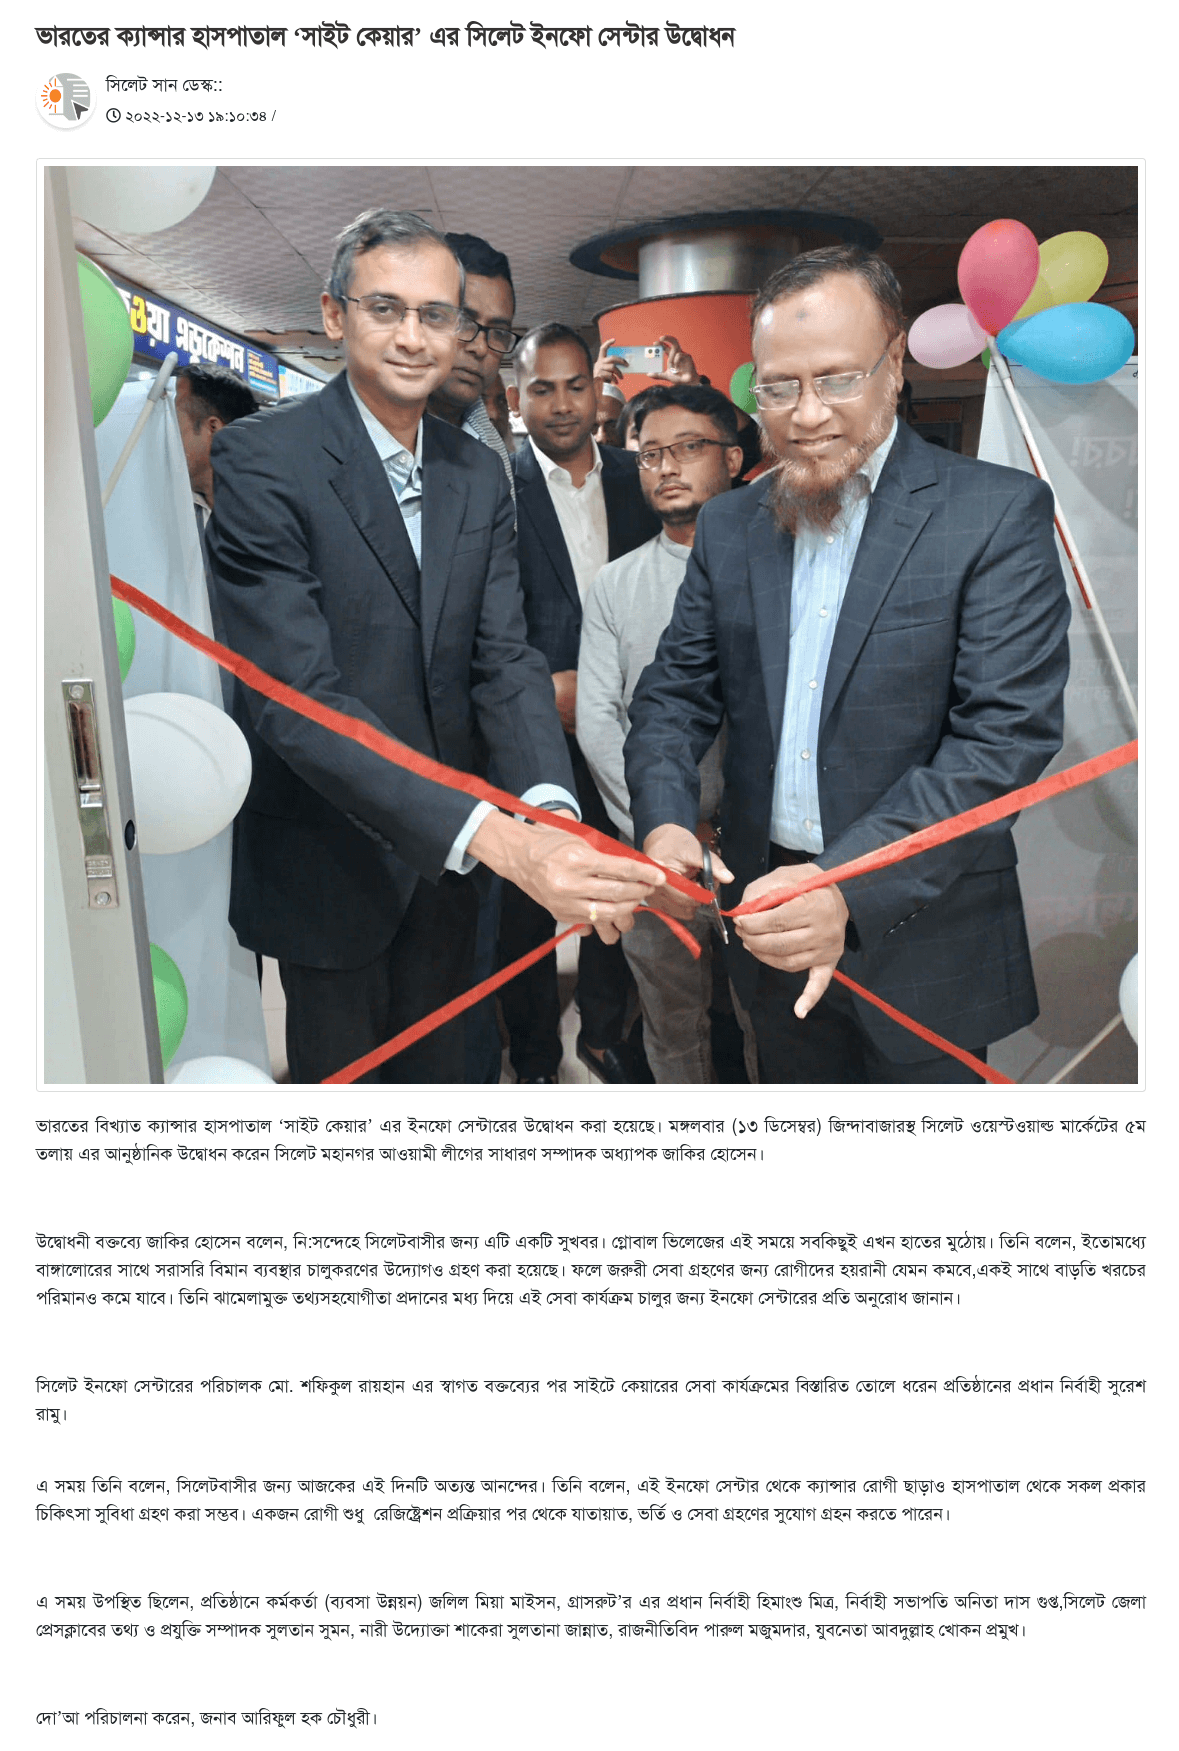 Cytecare Bangladesh IT centre launch - Sylhetsun